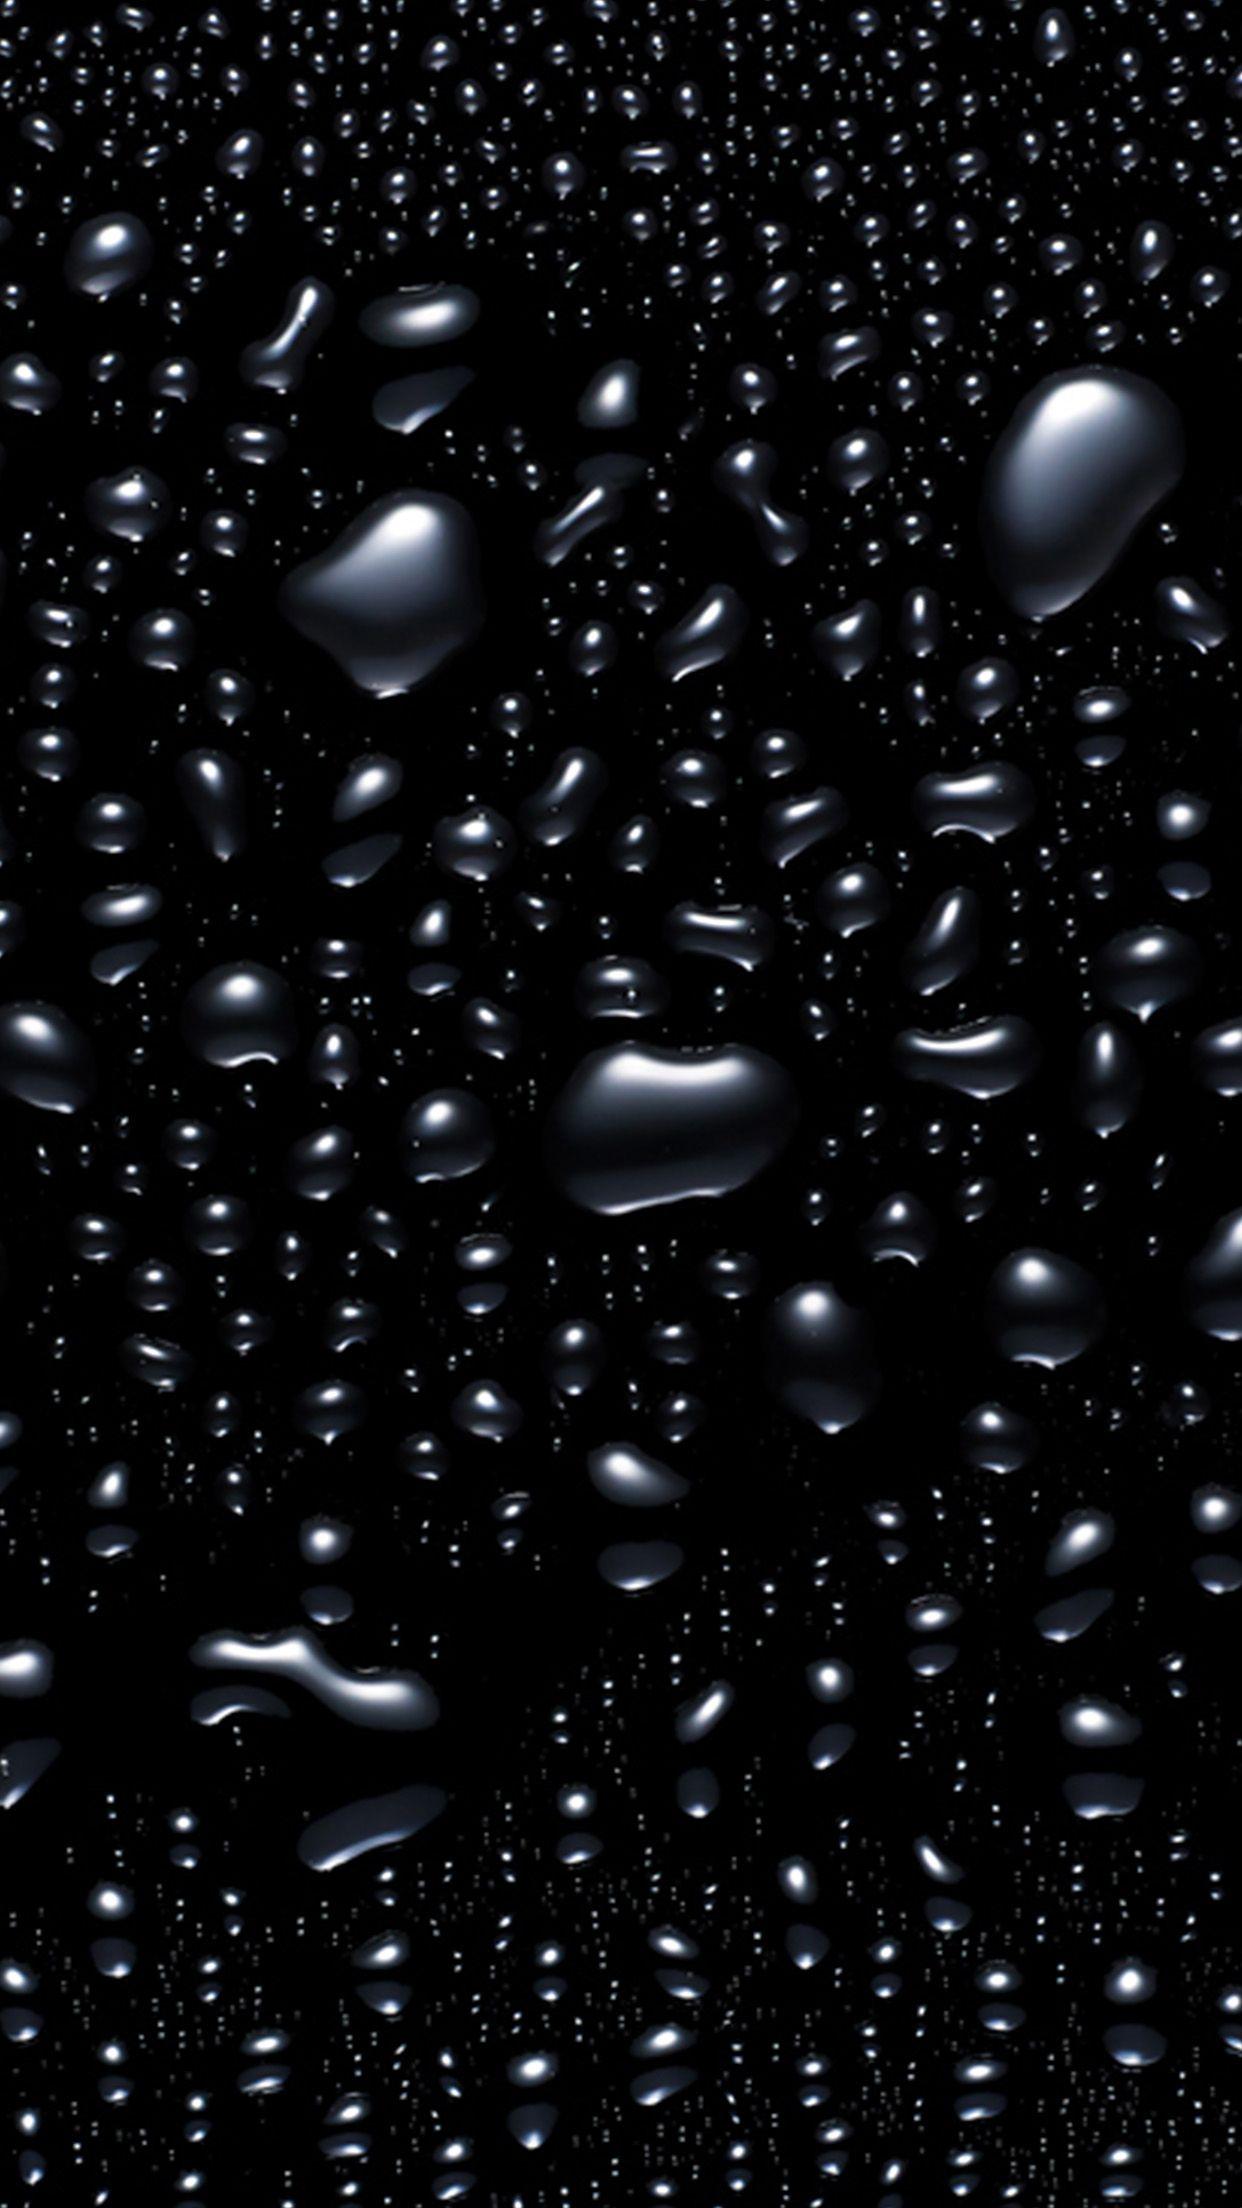 Hình nền bong bóng đen: Hình nền bong bóng đen sẽ đem lại khối lượng cá nhân hóa cho thiết bị của bạn. Với họa tiết bong bóng đen trên nền đen đượm, bạn sẽ có một thiết bị độc đáo và đầy tính thẩm mỹ.